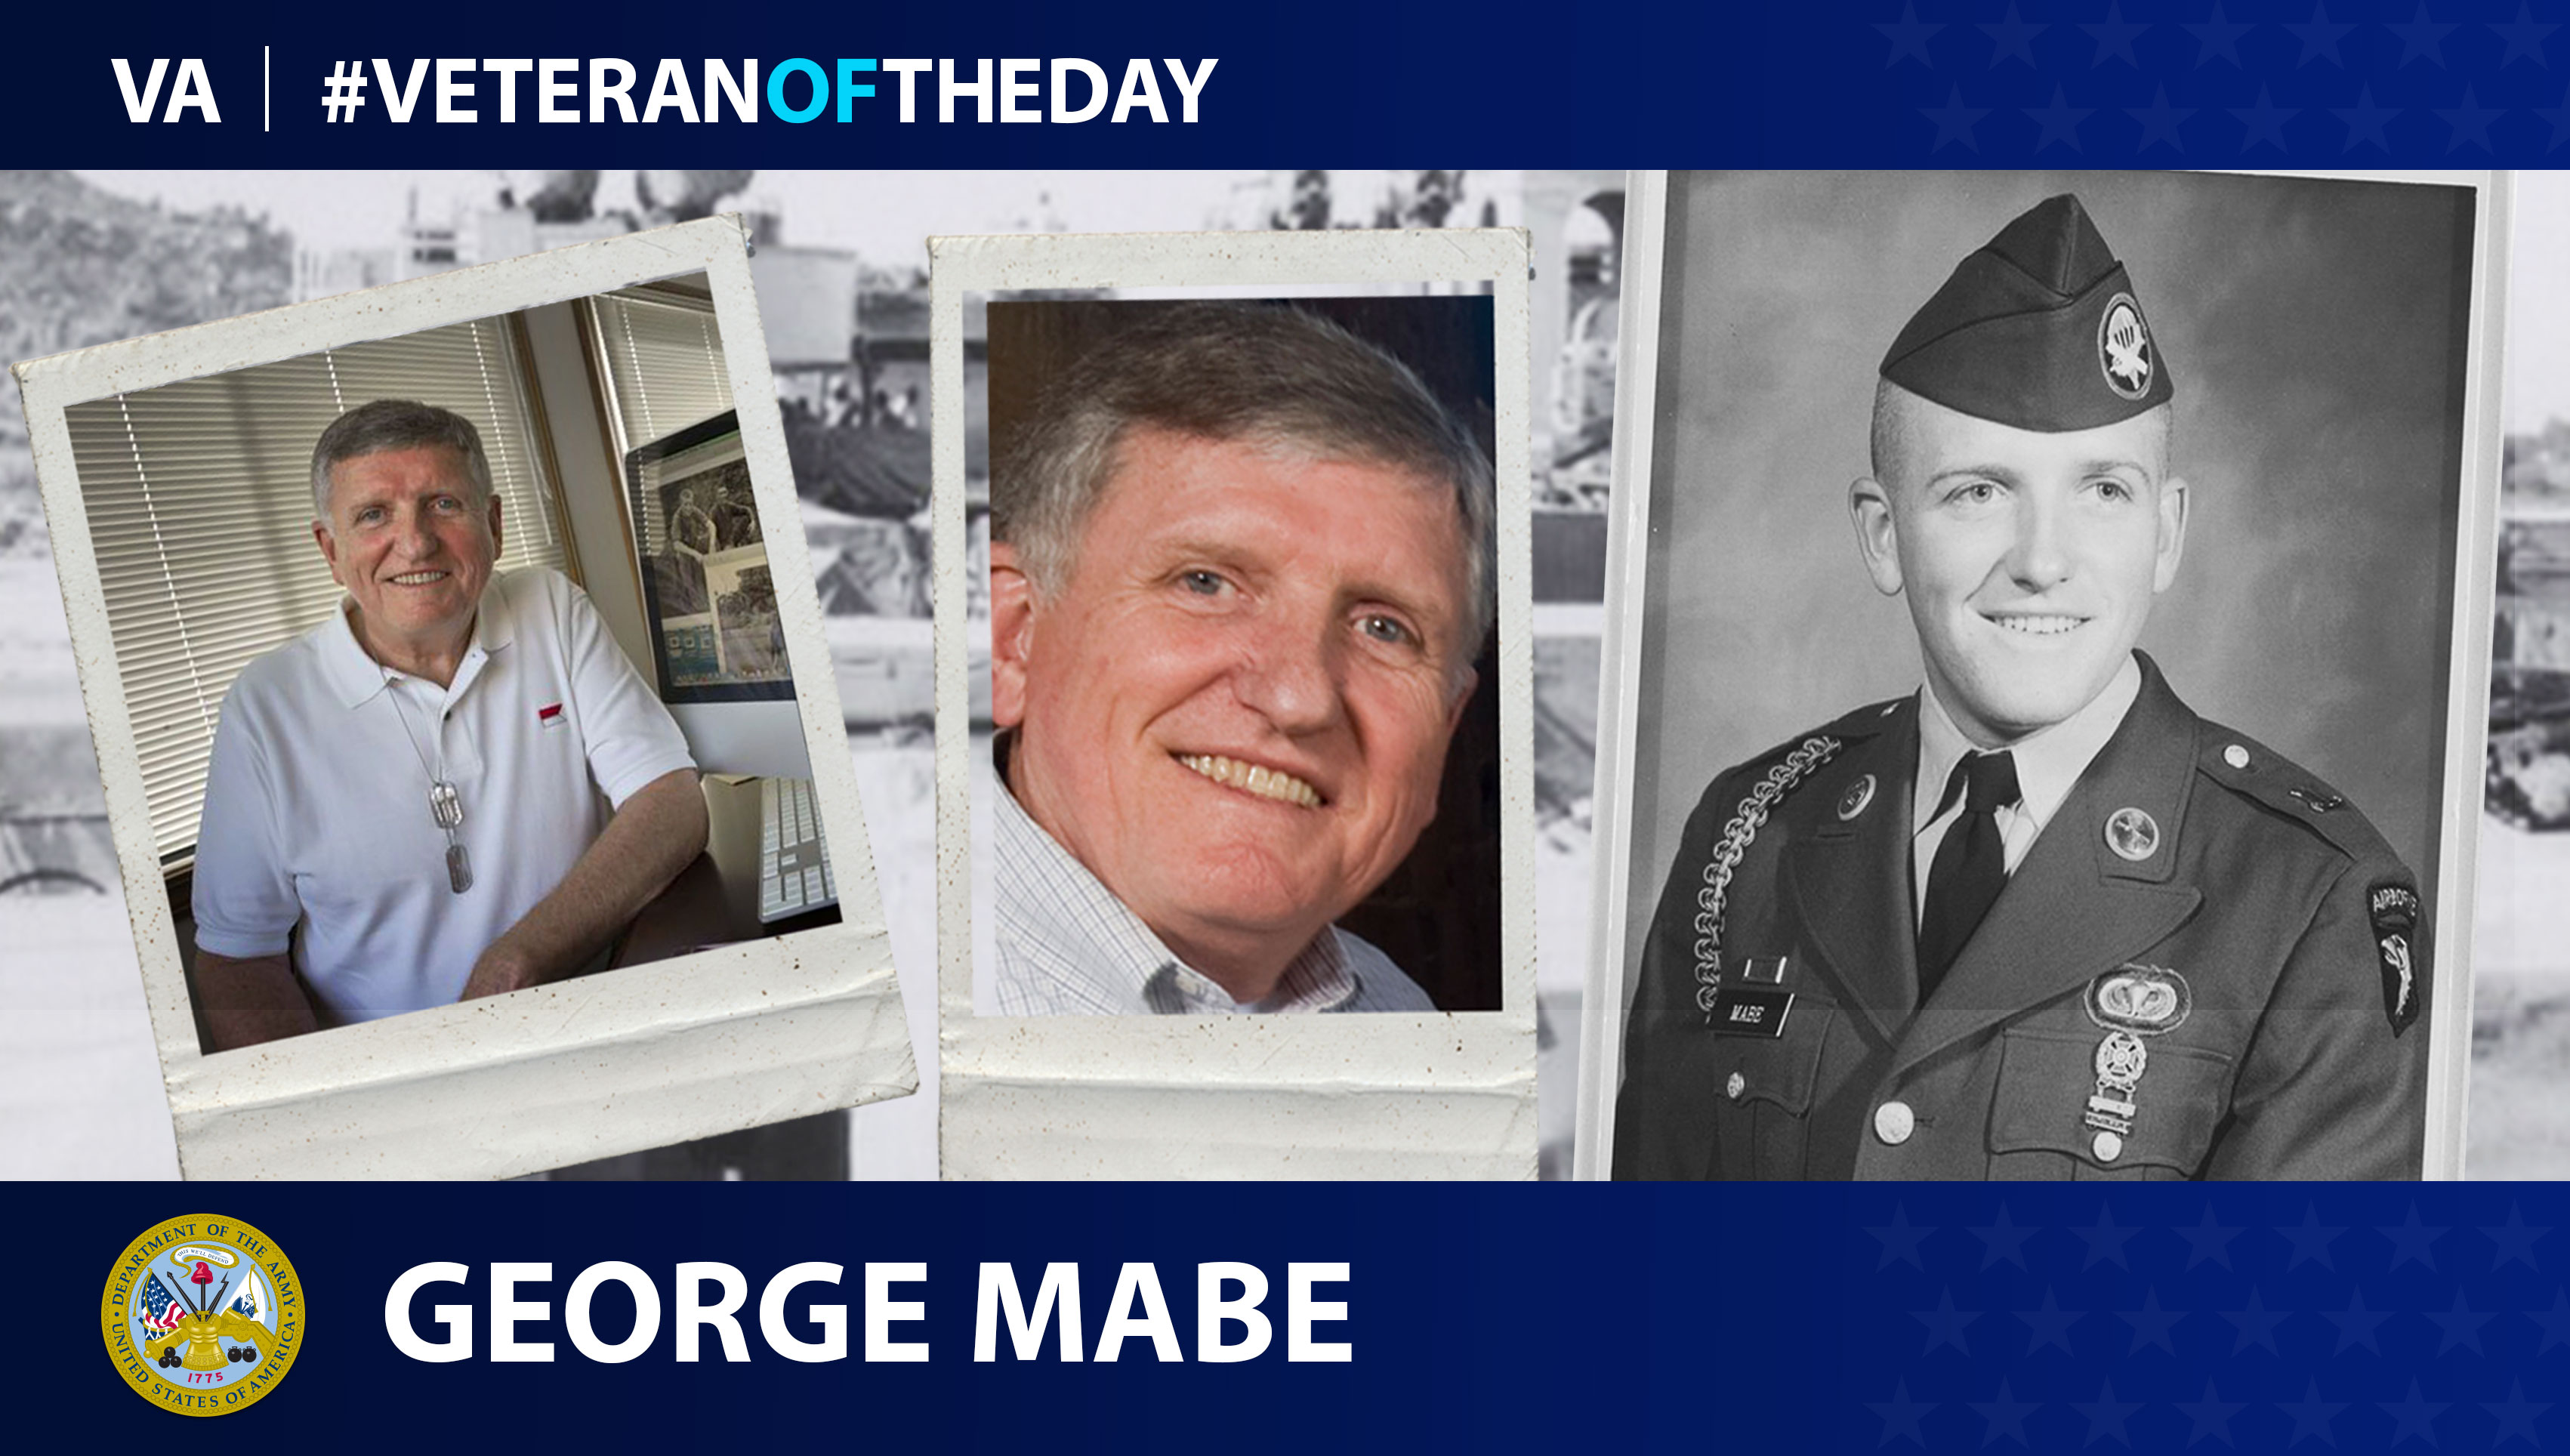 #VeteranOfTheDay Army Veteran George Mikey Mabe - VA News